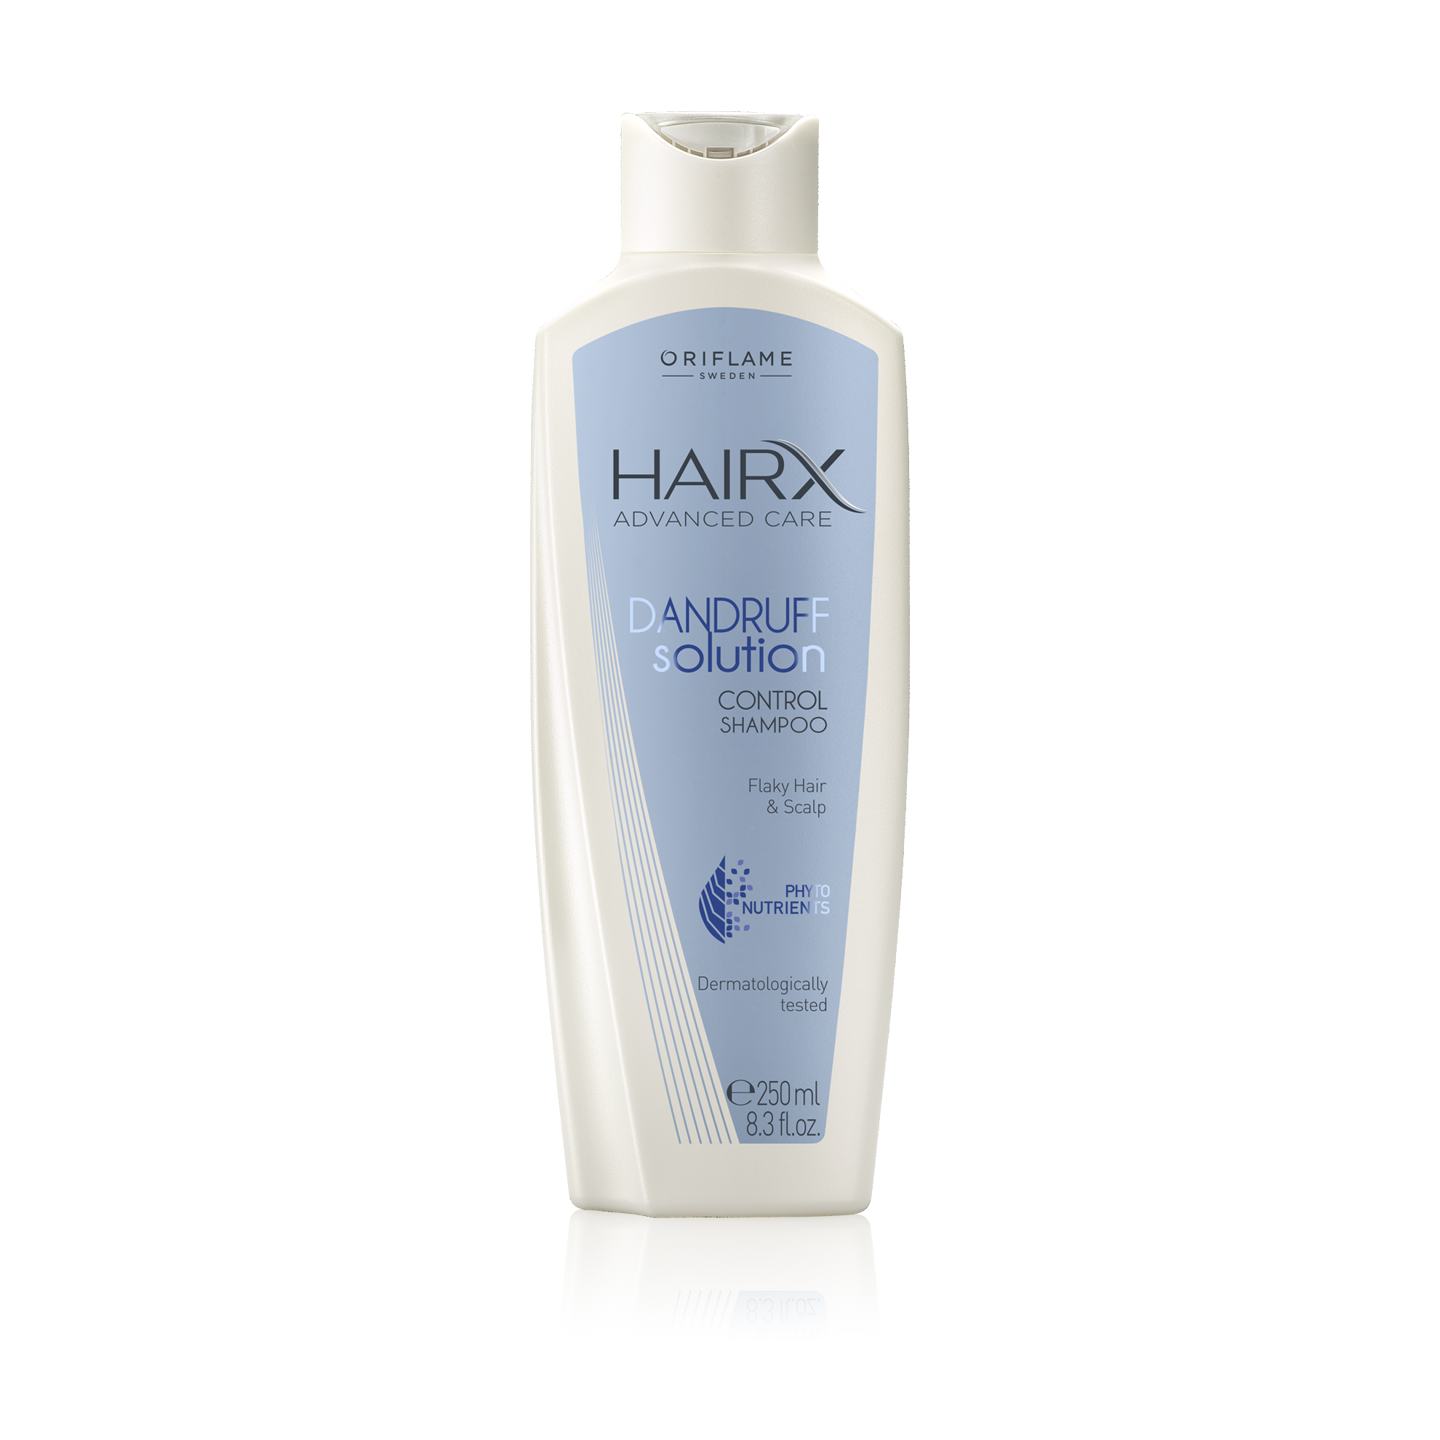 oriflame hair x smooth control szampon opinie wizaż